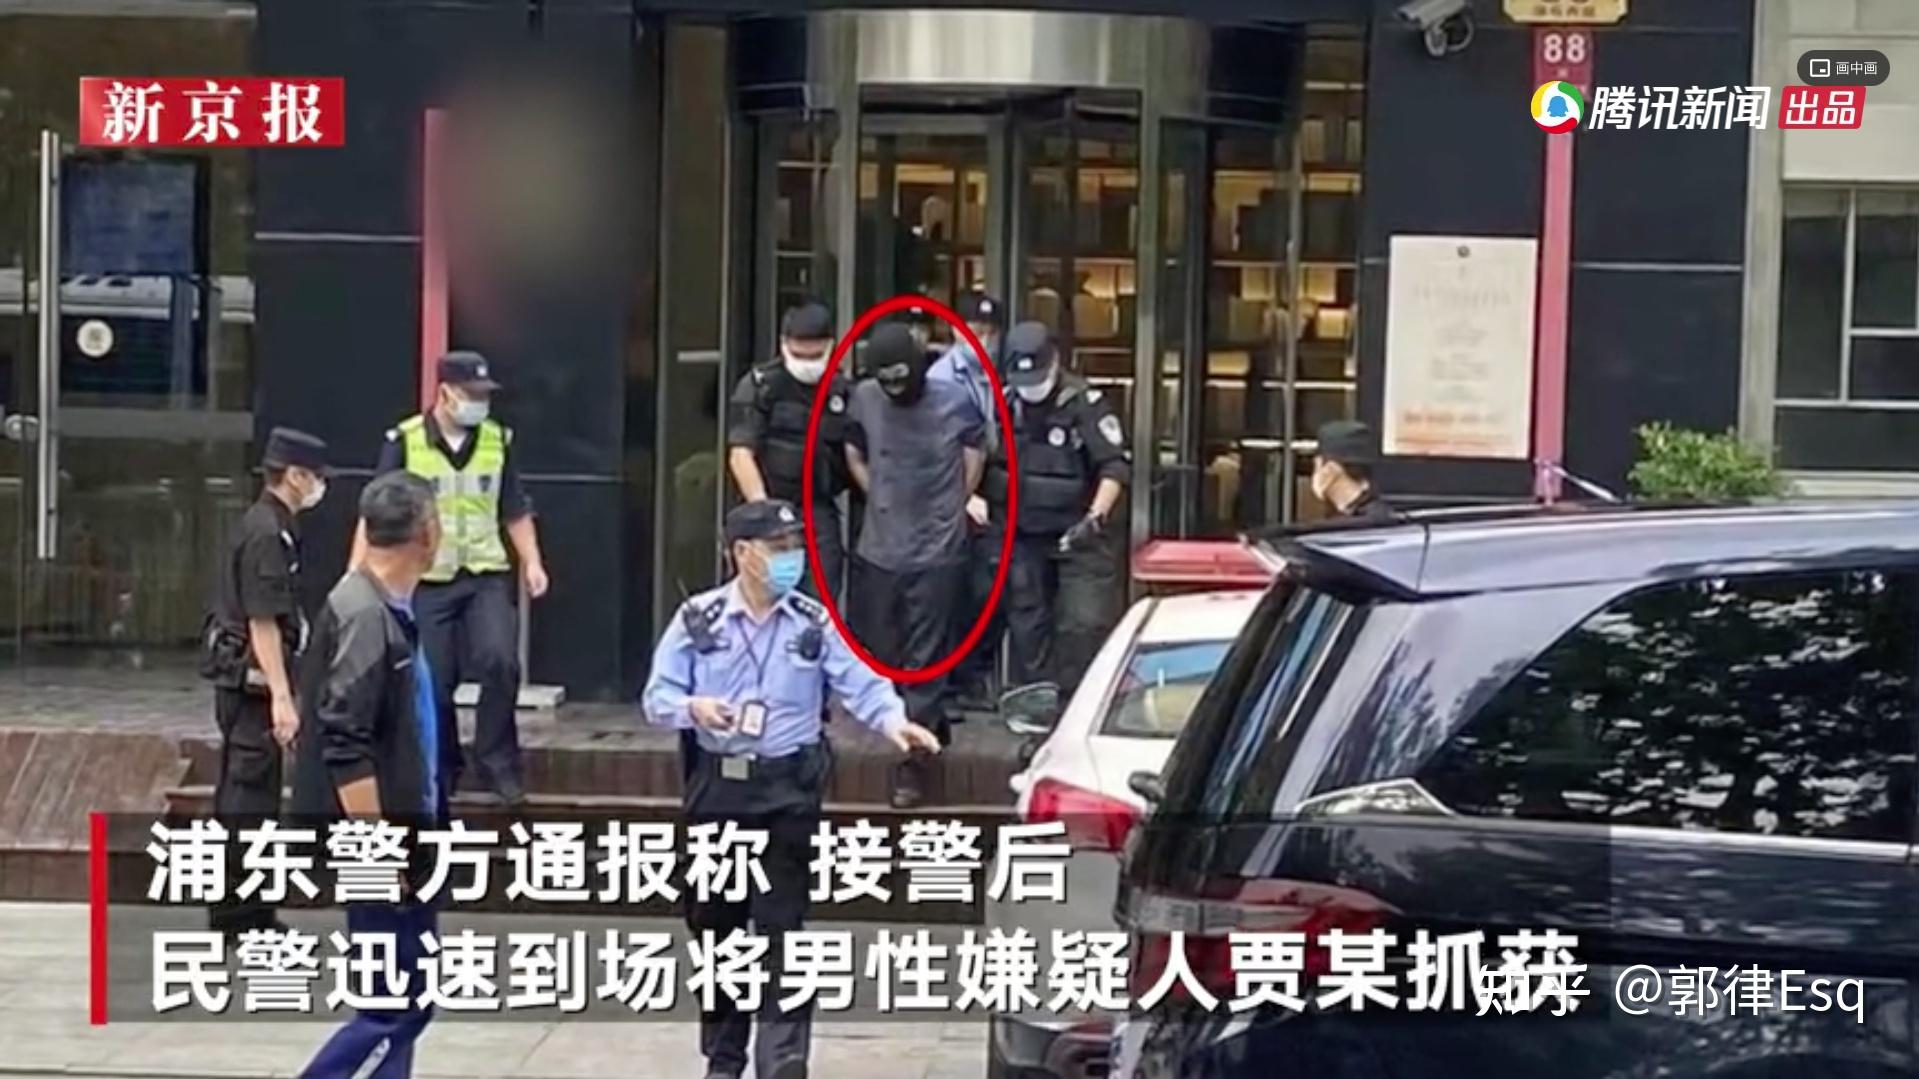 上海浦东警方通报一起命案,系工作纠纷,嫌疑人已被抓获,具体情况如何?